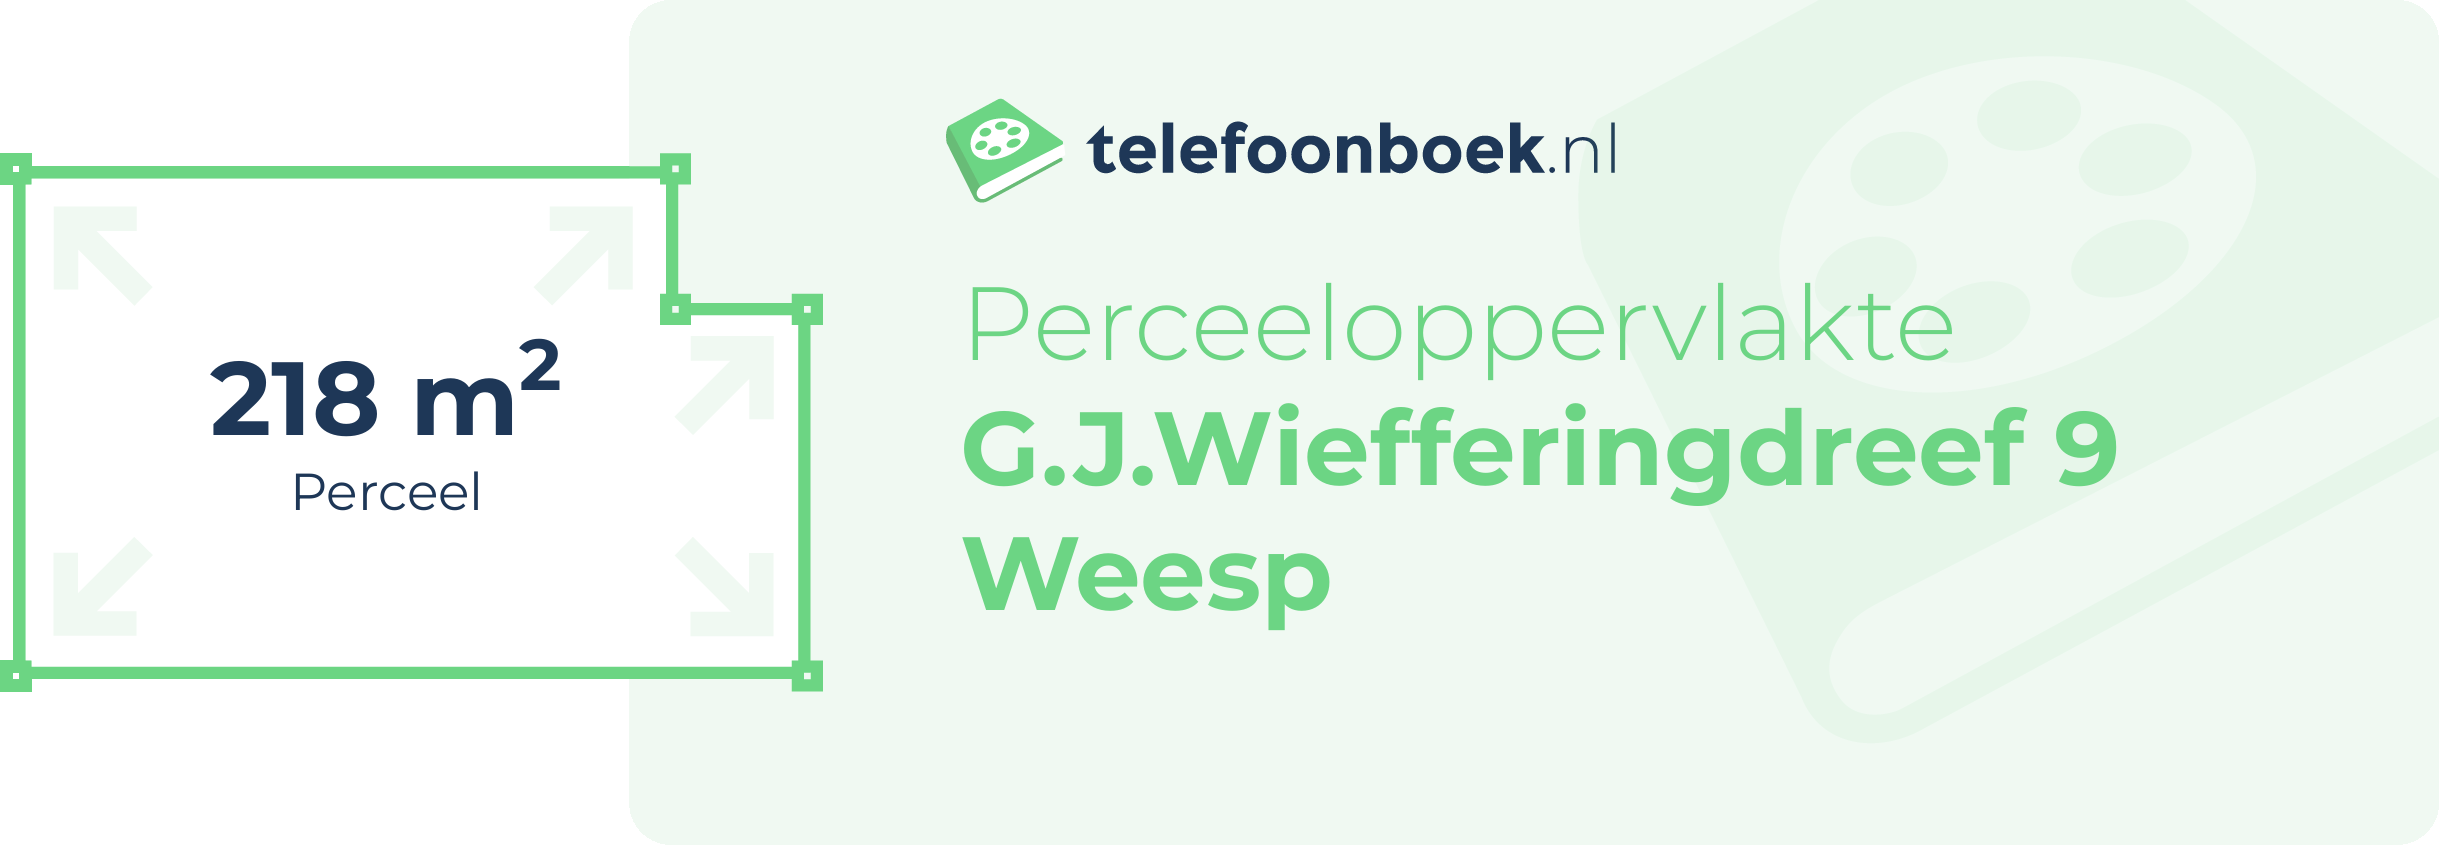 Perceeloppervlakte G.J.Wiefferingdreef 9 Weesp